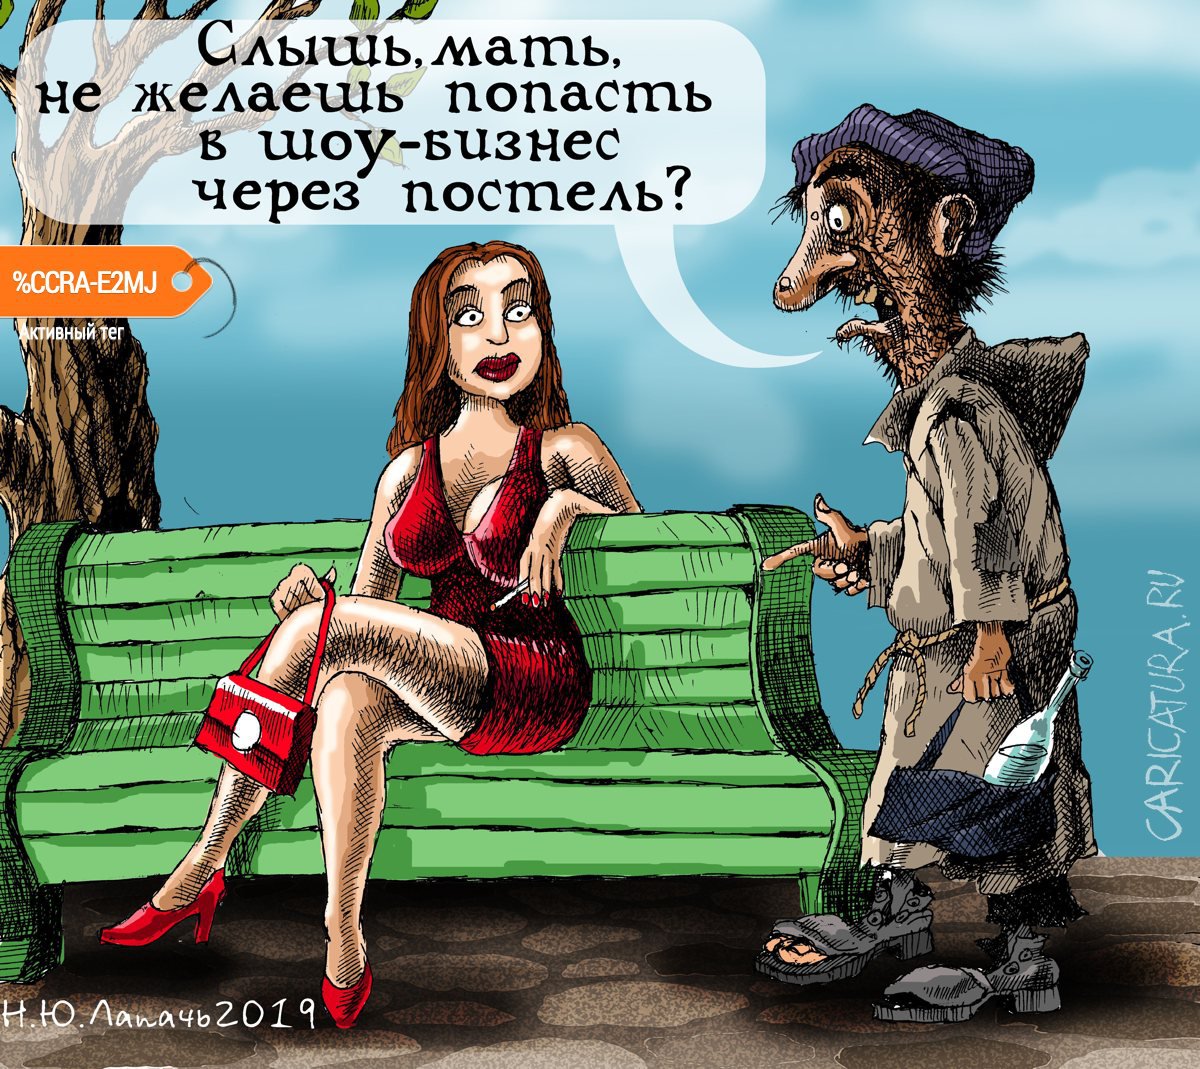 Карикатура "Шоу-бизнес", Теплый Телогрей